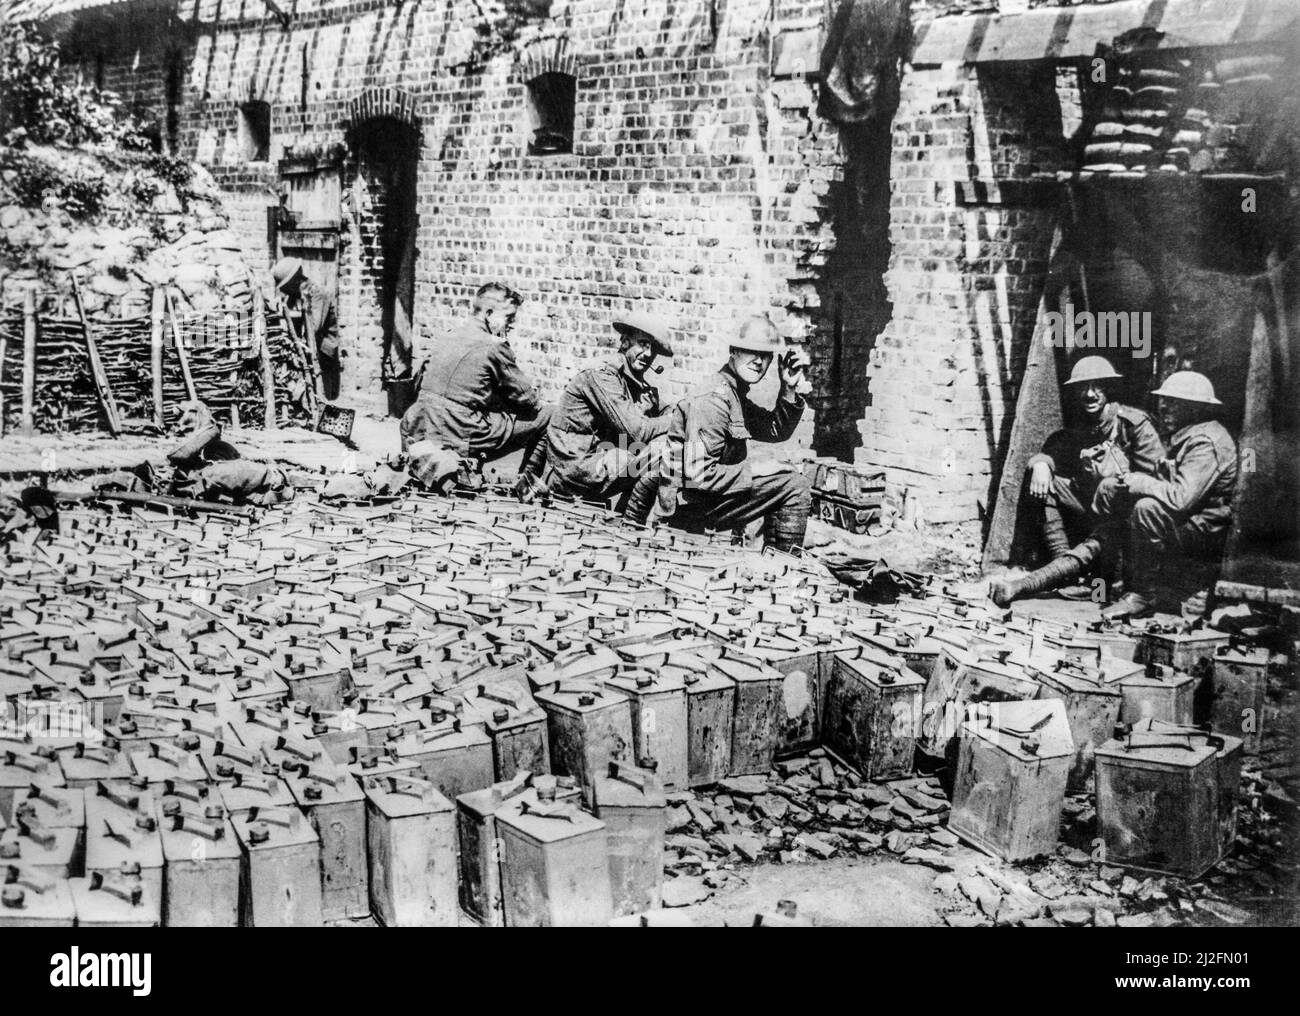 Britische Soldaten des Ersten Weltkriegs mit Kanister auf einer wassergefüllten Zinnkippe in Elverdinghe, Westflandern, Belgien, im Jahr 1917 während des Ersten Weltkriegs Stockfoto